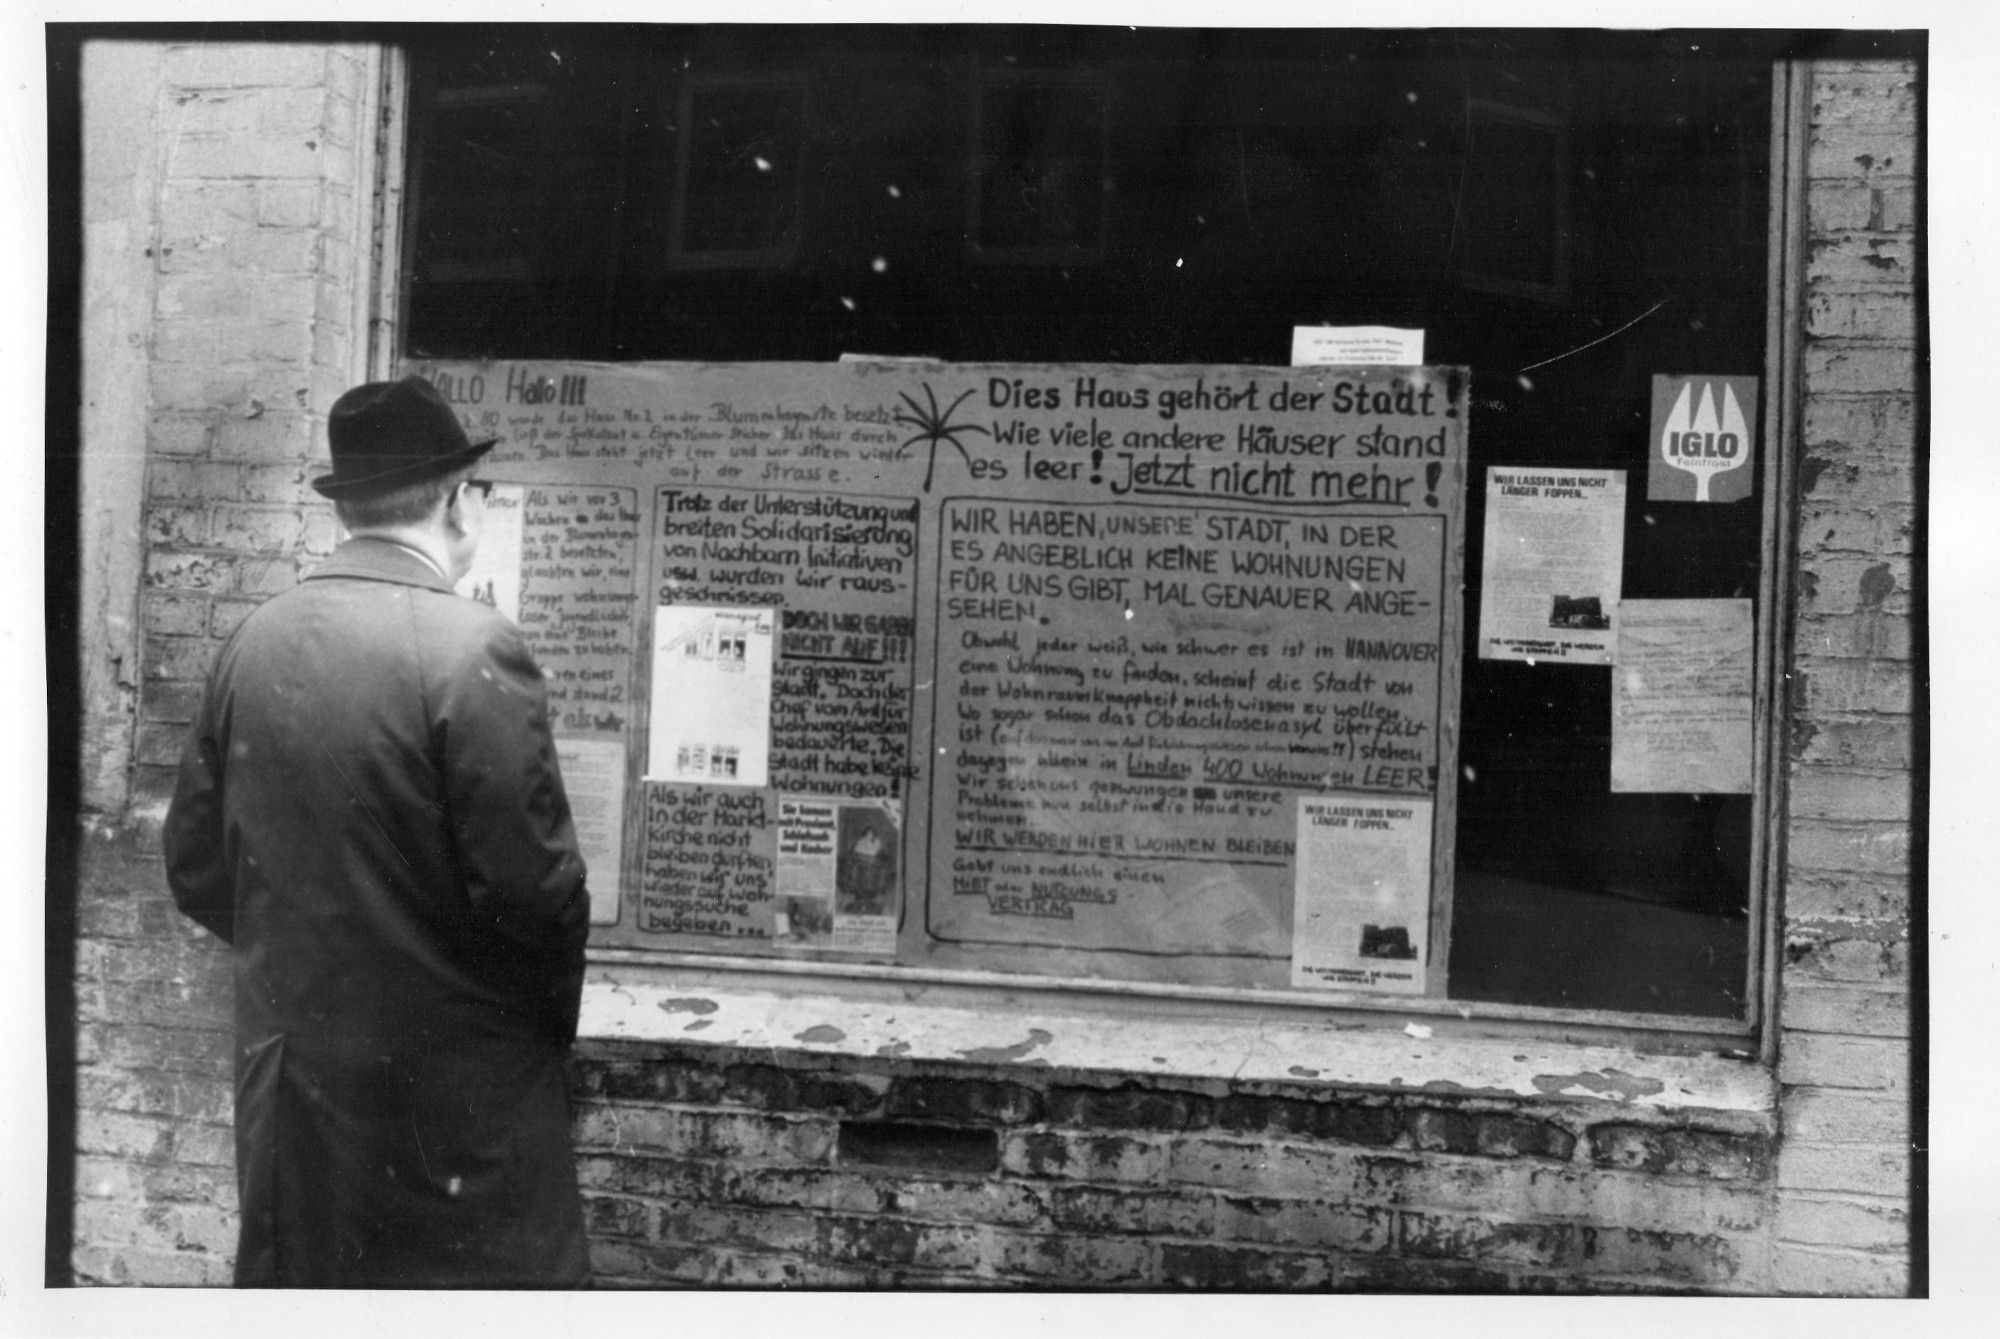 Infofenster am besetzten Haus Ricklinger Str. 46, 3. März 1980